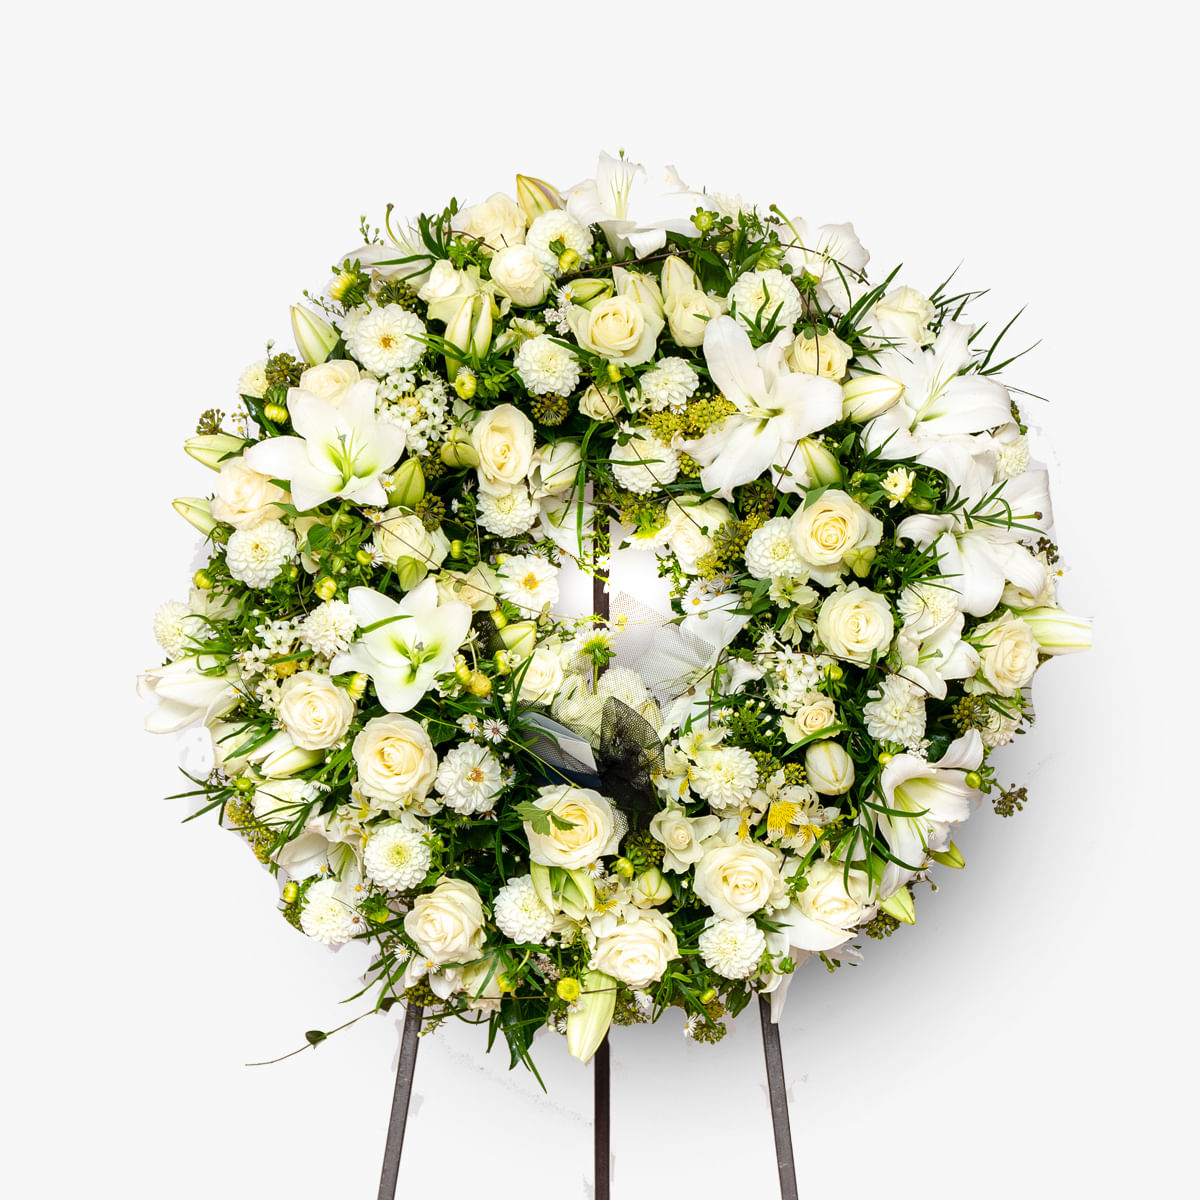 Jerba funerara cu crizanteme albe si anthurium rosu – Standard albe